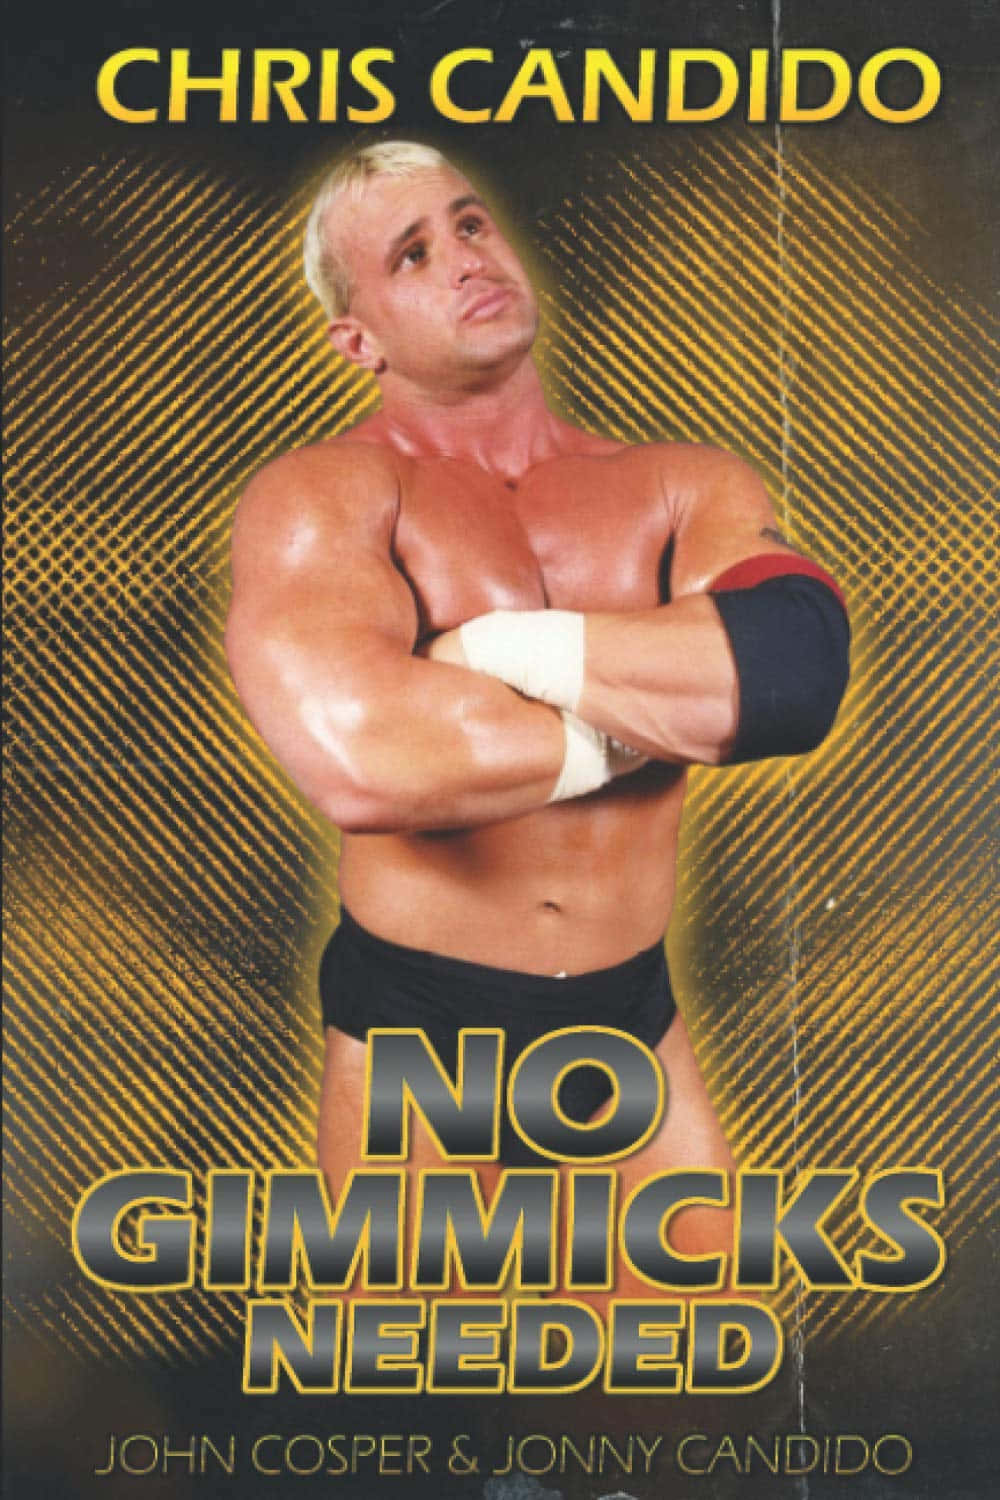 Denne tapet er et billede af Chris Candido fra NWA TNA-beklædning. Wallpaper